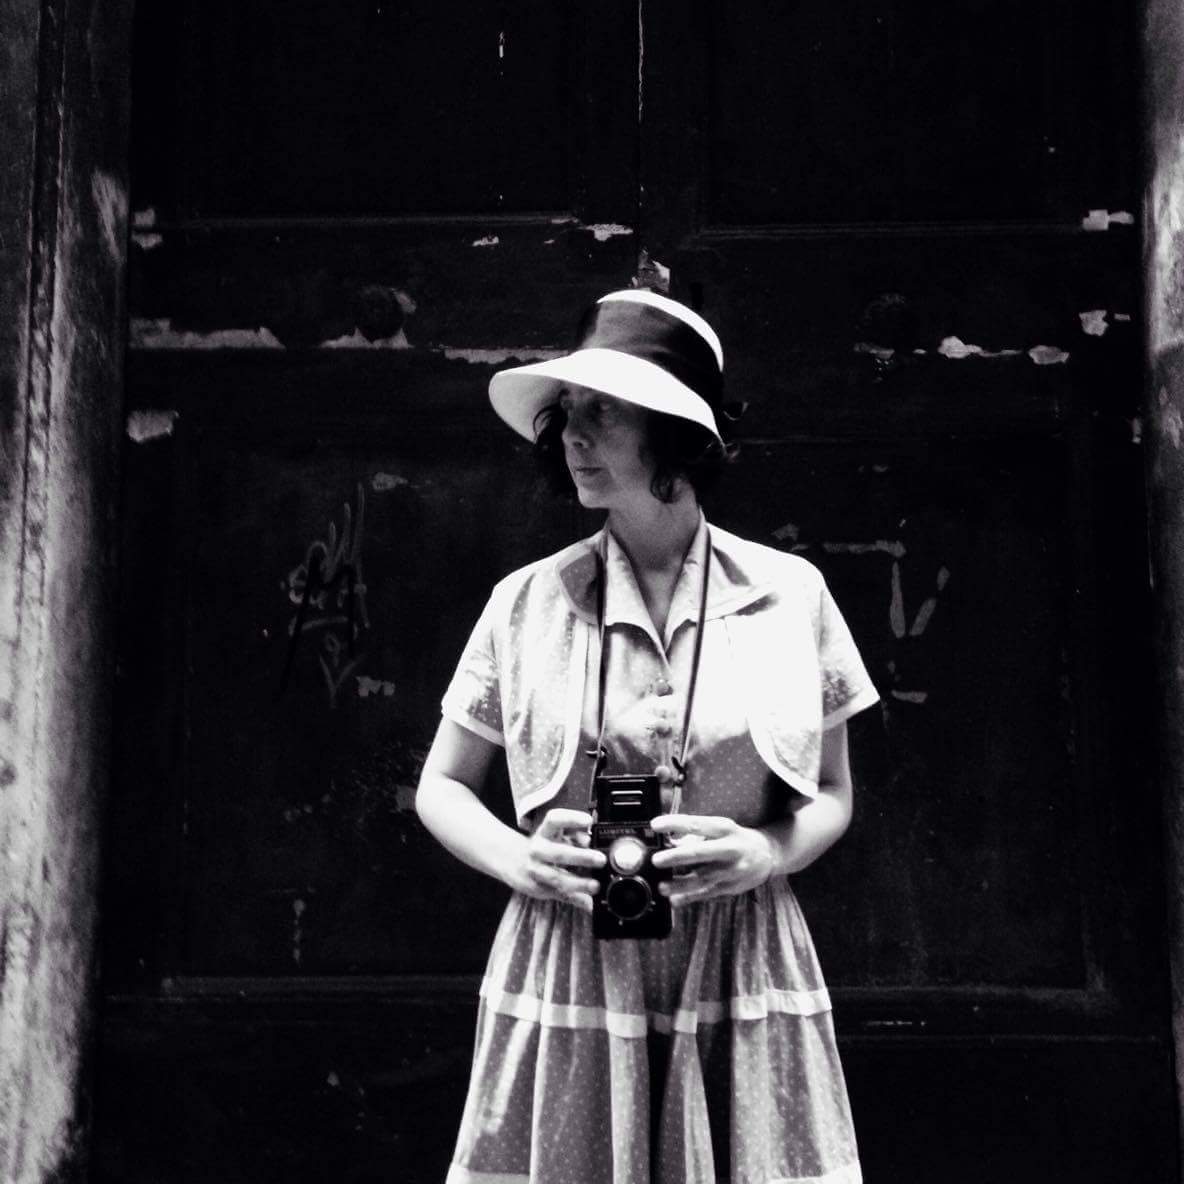 Daniela Carucci nei panni di Vivian Maier, per i vicoli del centro storico di Genova (foto di Paola Pietronave)